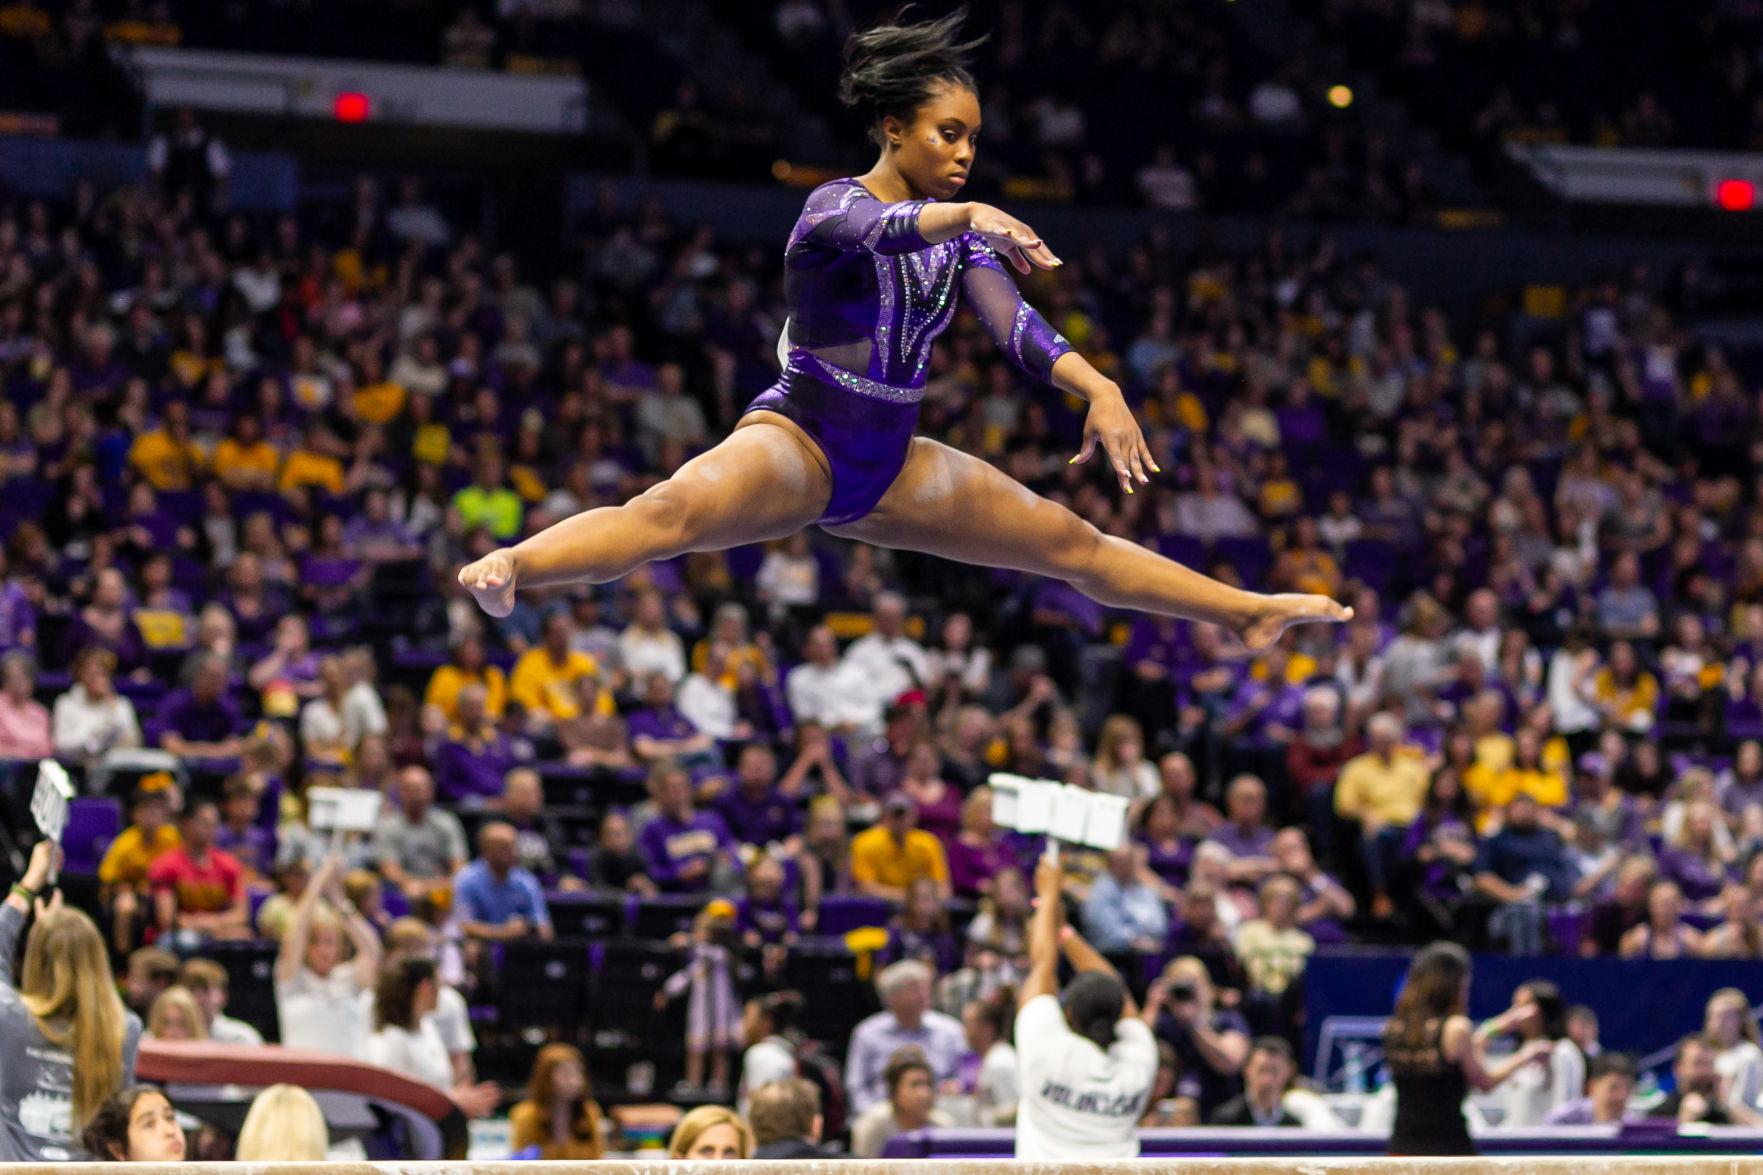 Lsu Gymnastics Posts Highest Score In Round One Of Baton Rouge Regional